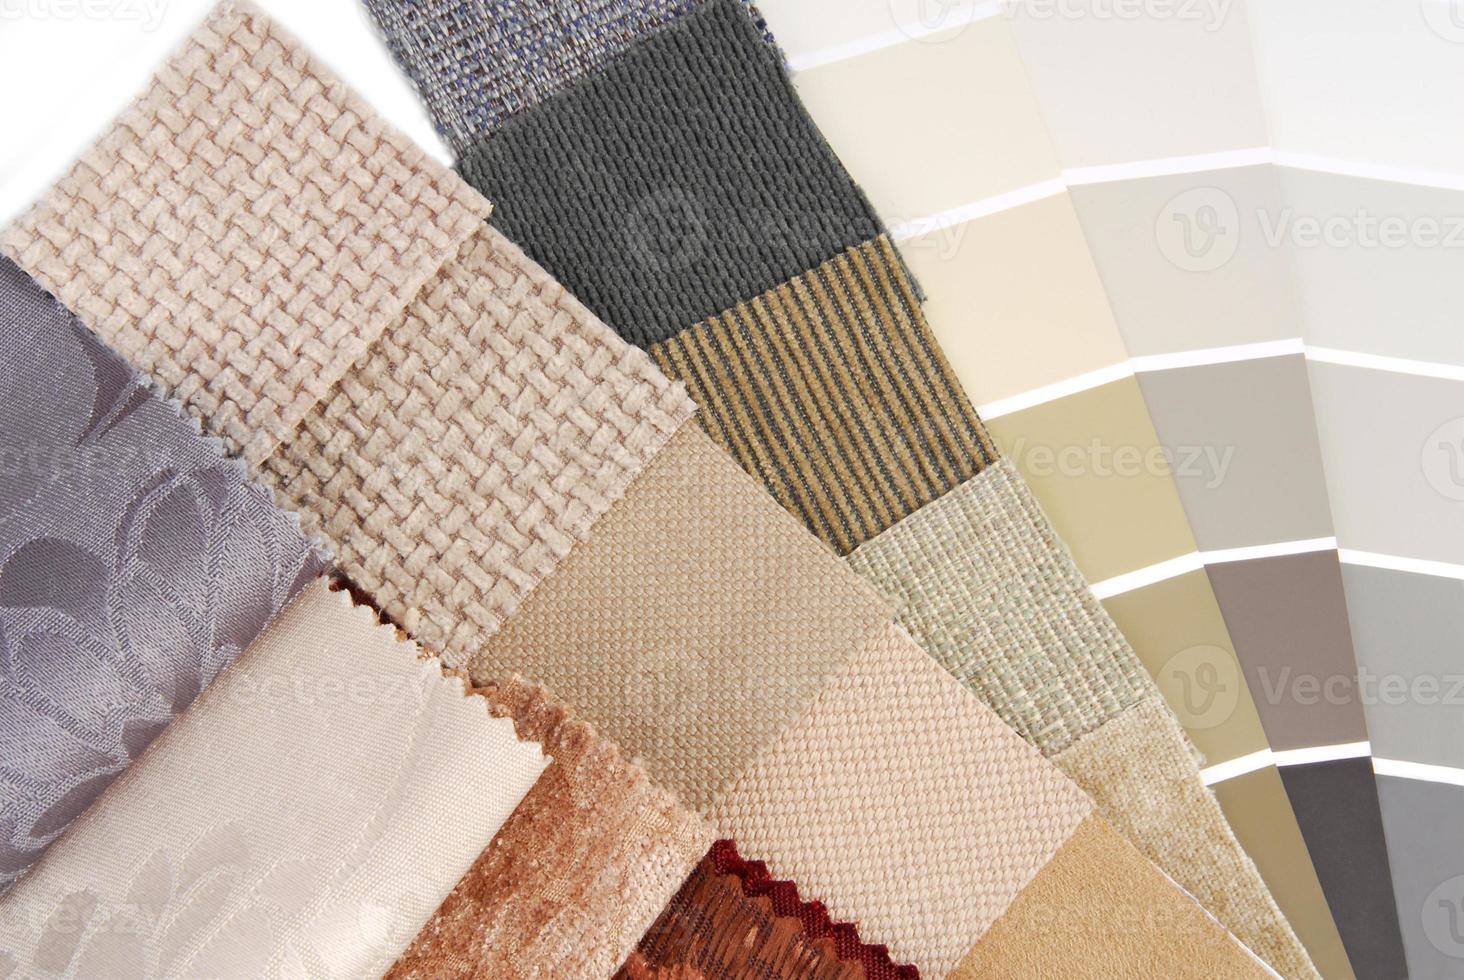 Auswahl an Polsterteppichen und Vorhangfarben für den Innenraum foto